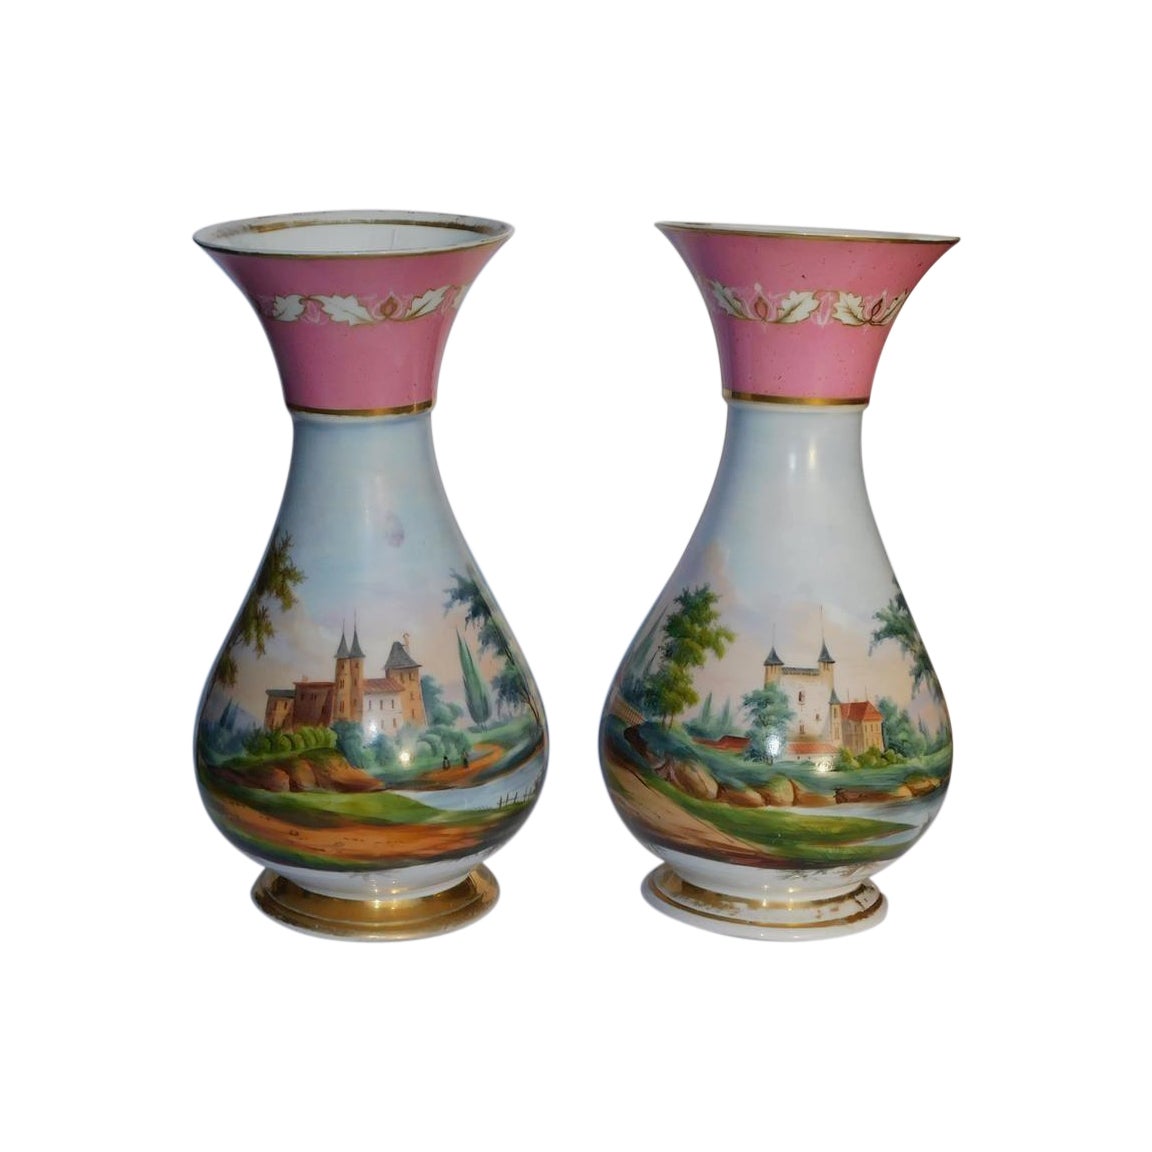 Paar französische Vasen aus bemaltem Porzellan mit szenischen Landschaften von alten Paaren, um 1840